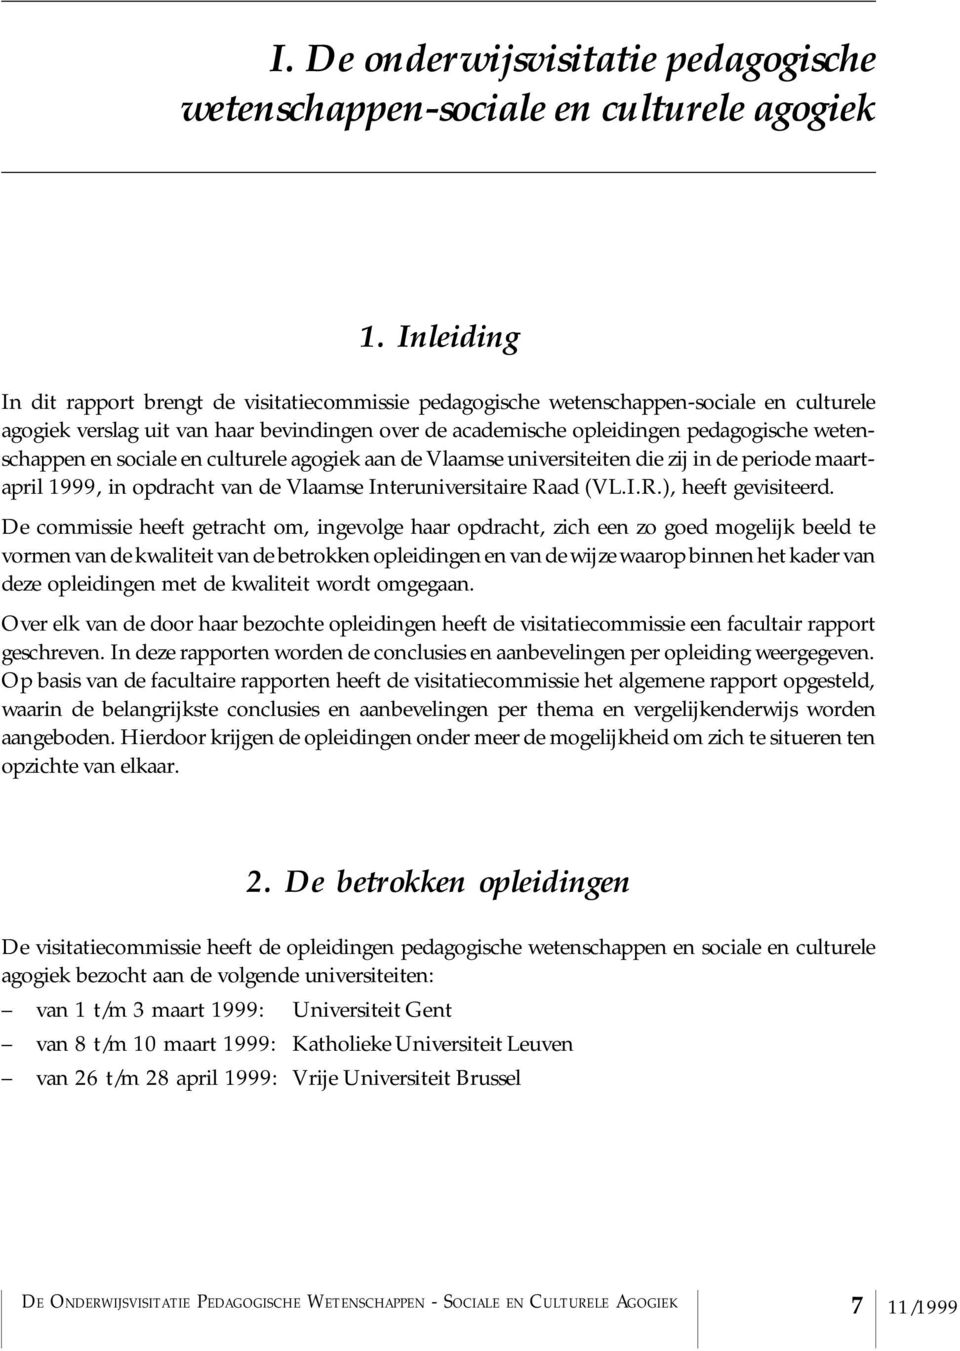 wetenschappen en sociale en culturele agogiek aan de Vlaamse universiteiten die zij in de periode maartapril 1999, in opdracht van de Vlaamse Interuniversitaire Raad (VL.I.R.), heeft gevisiteerd.